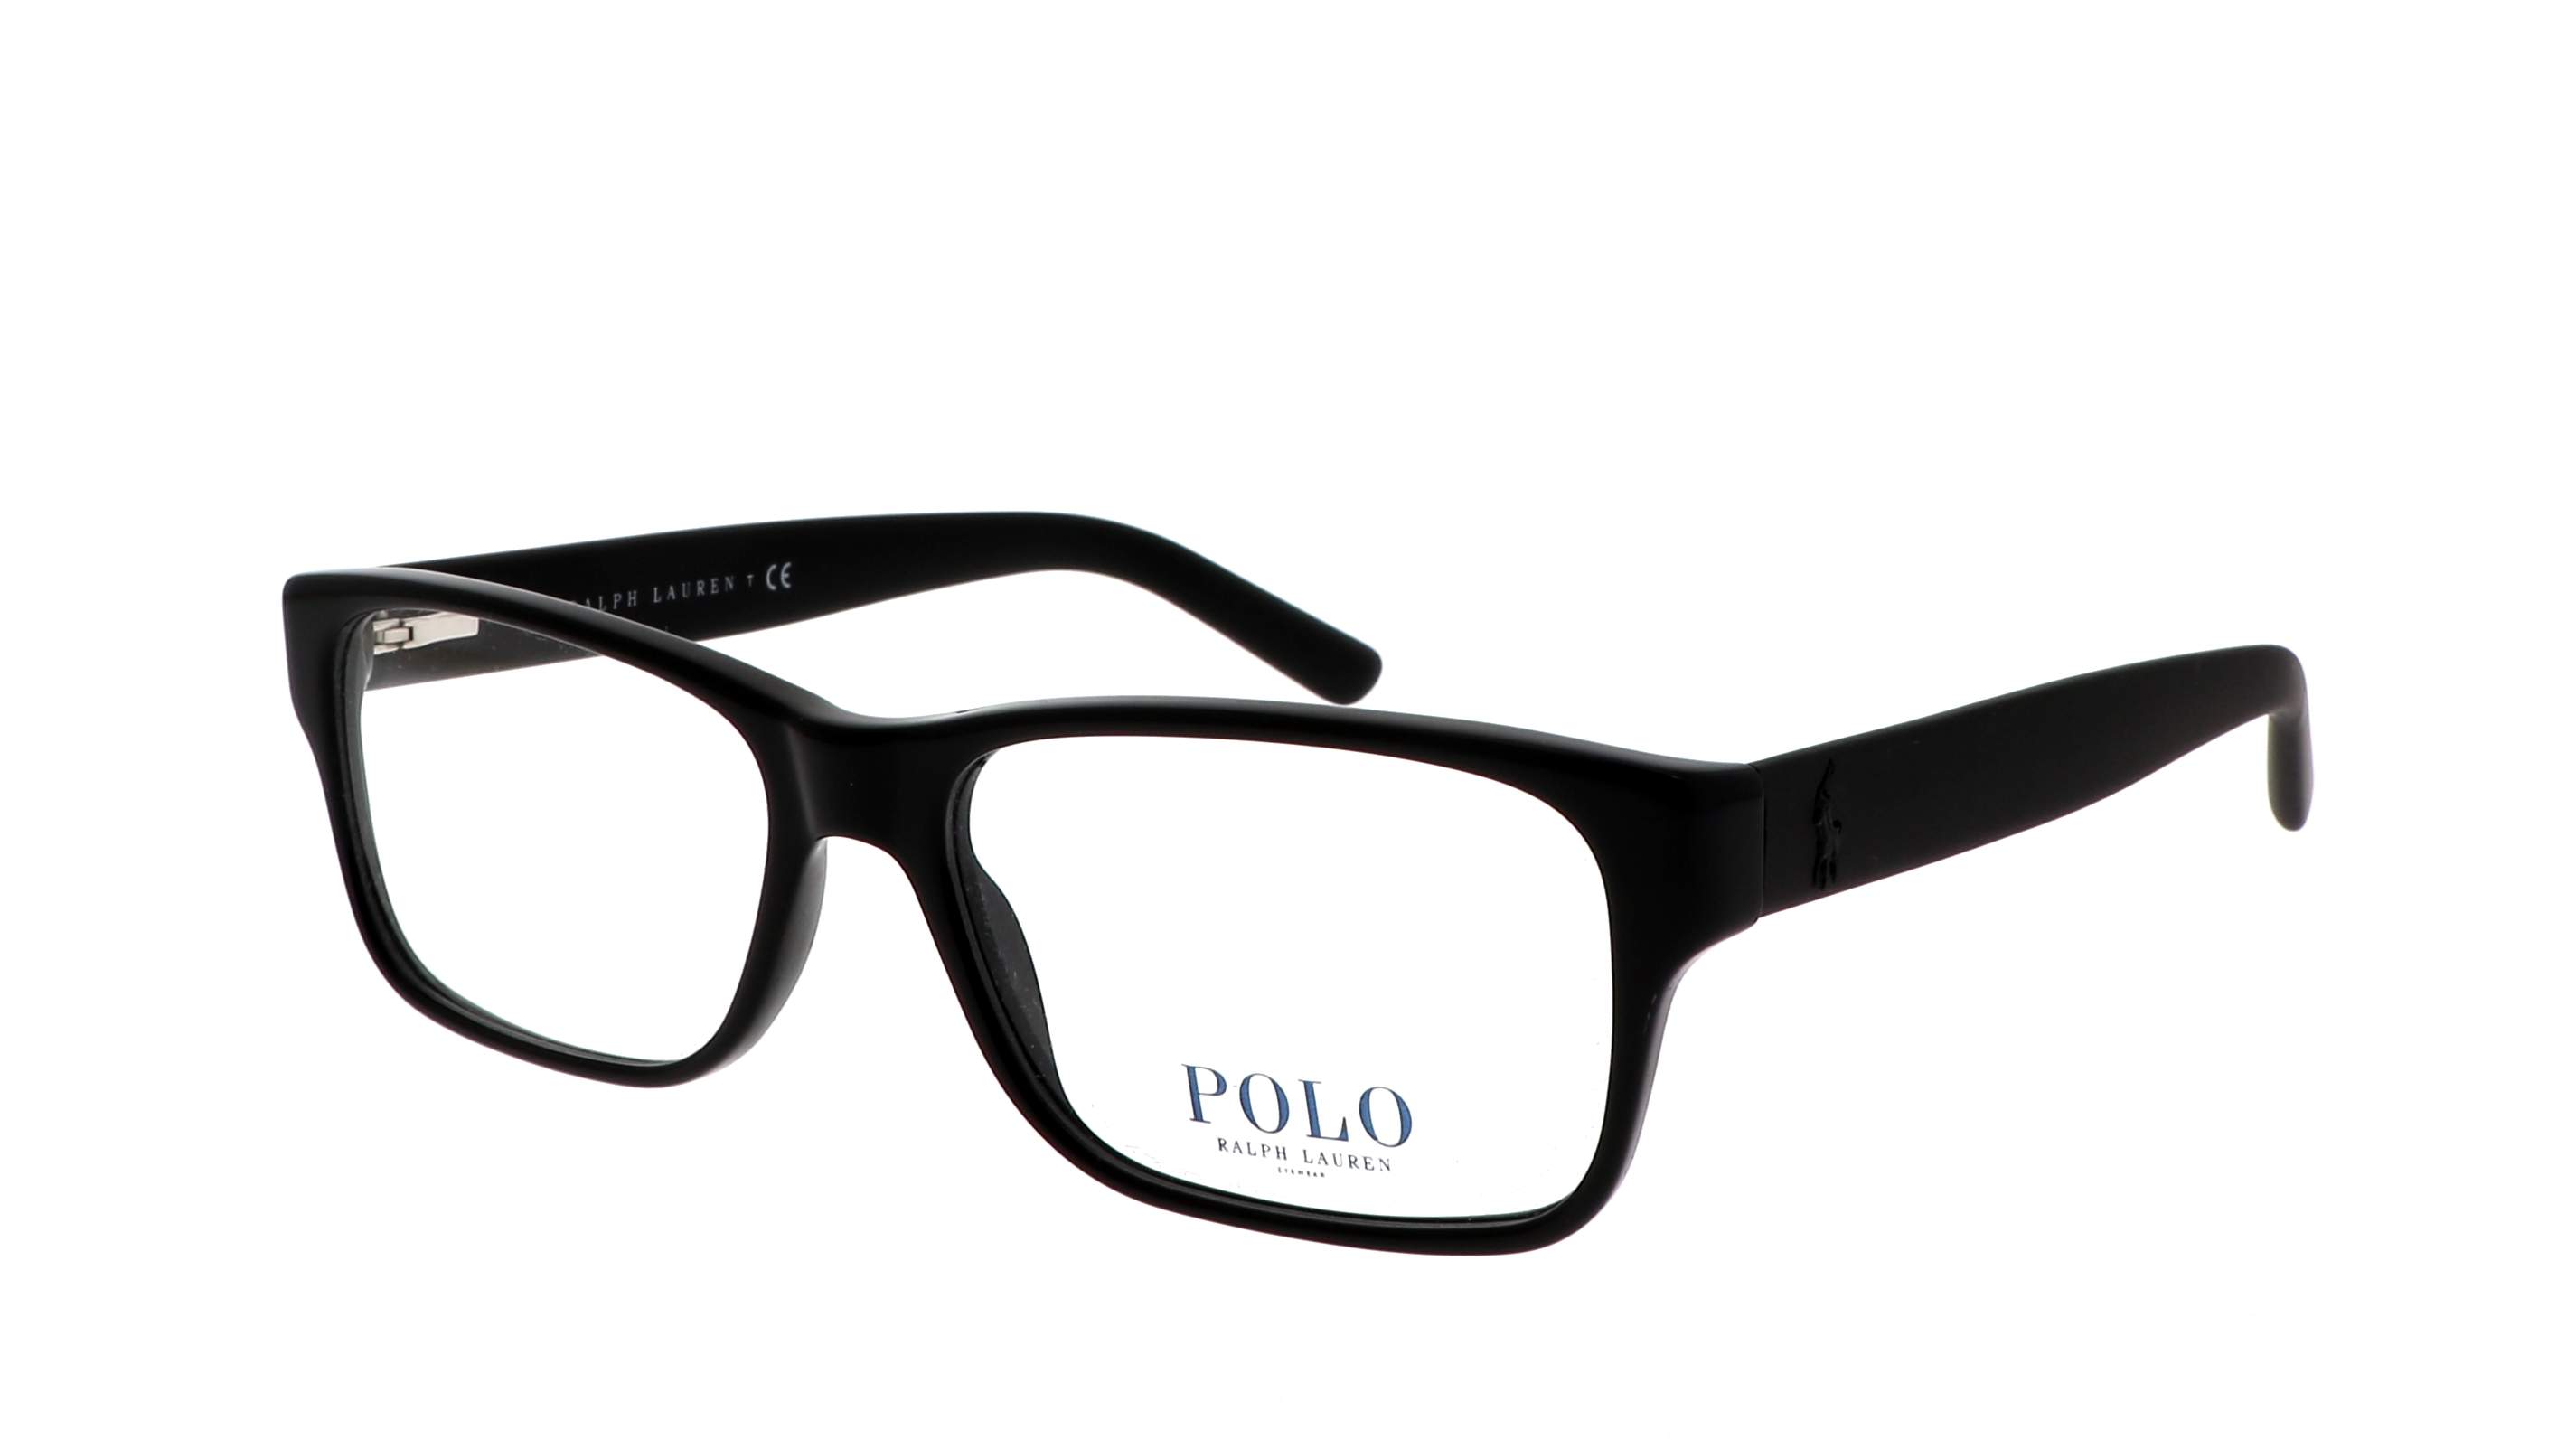 polo optical frames